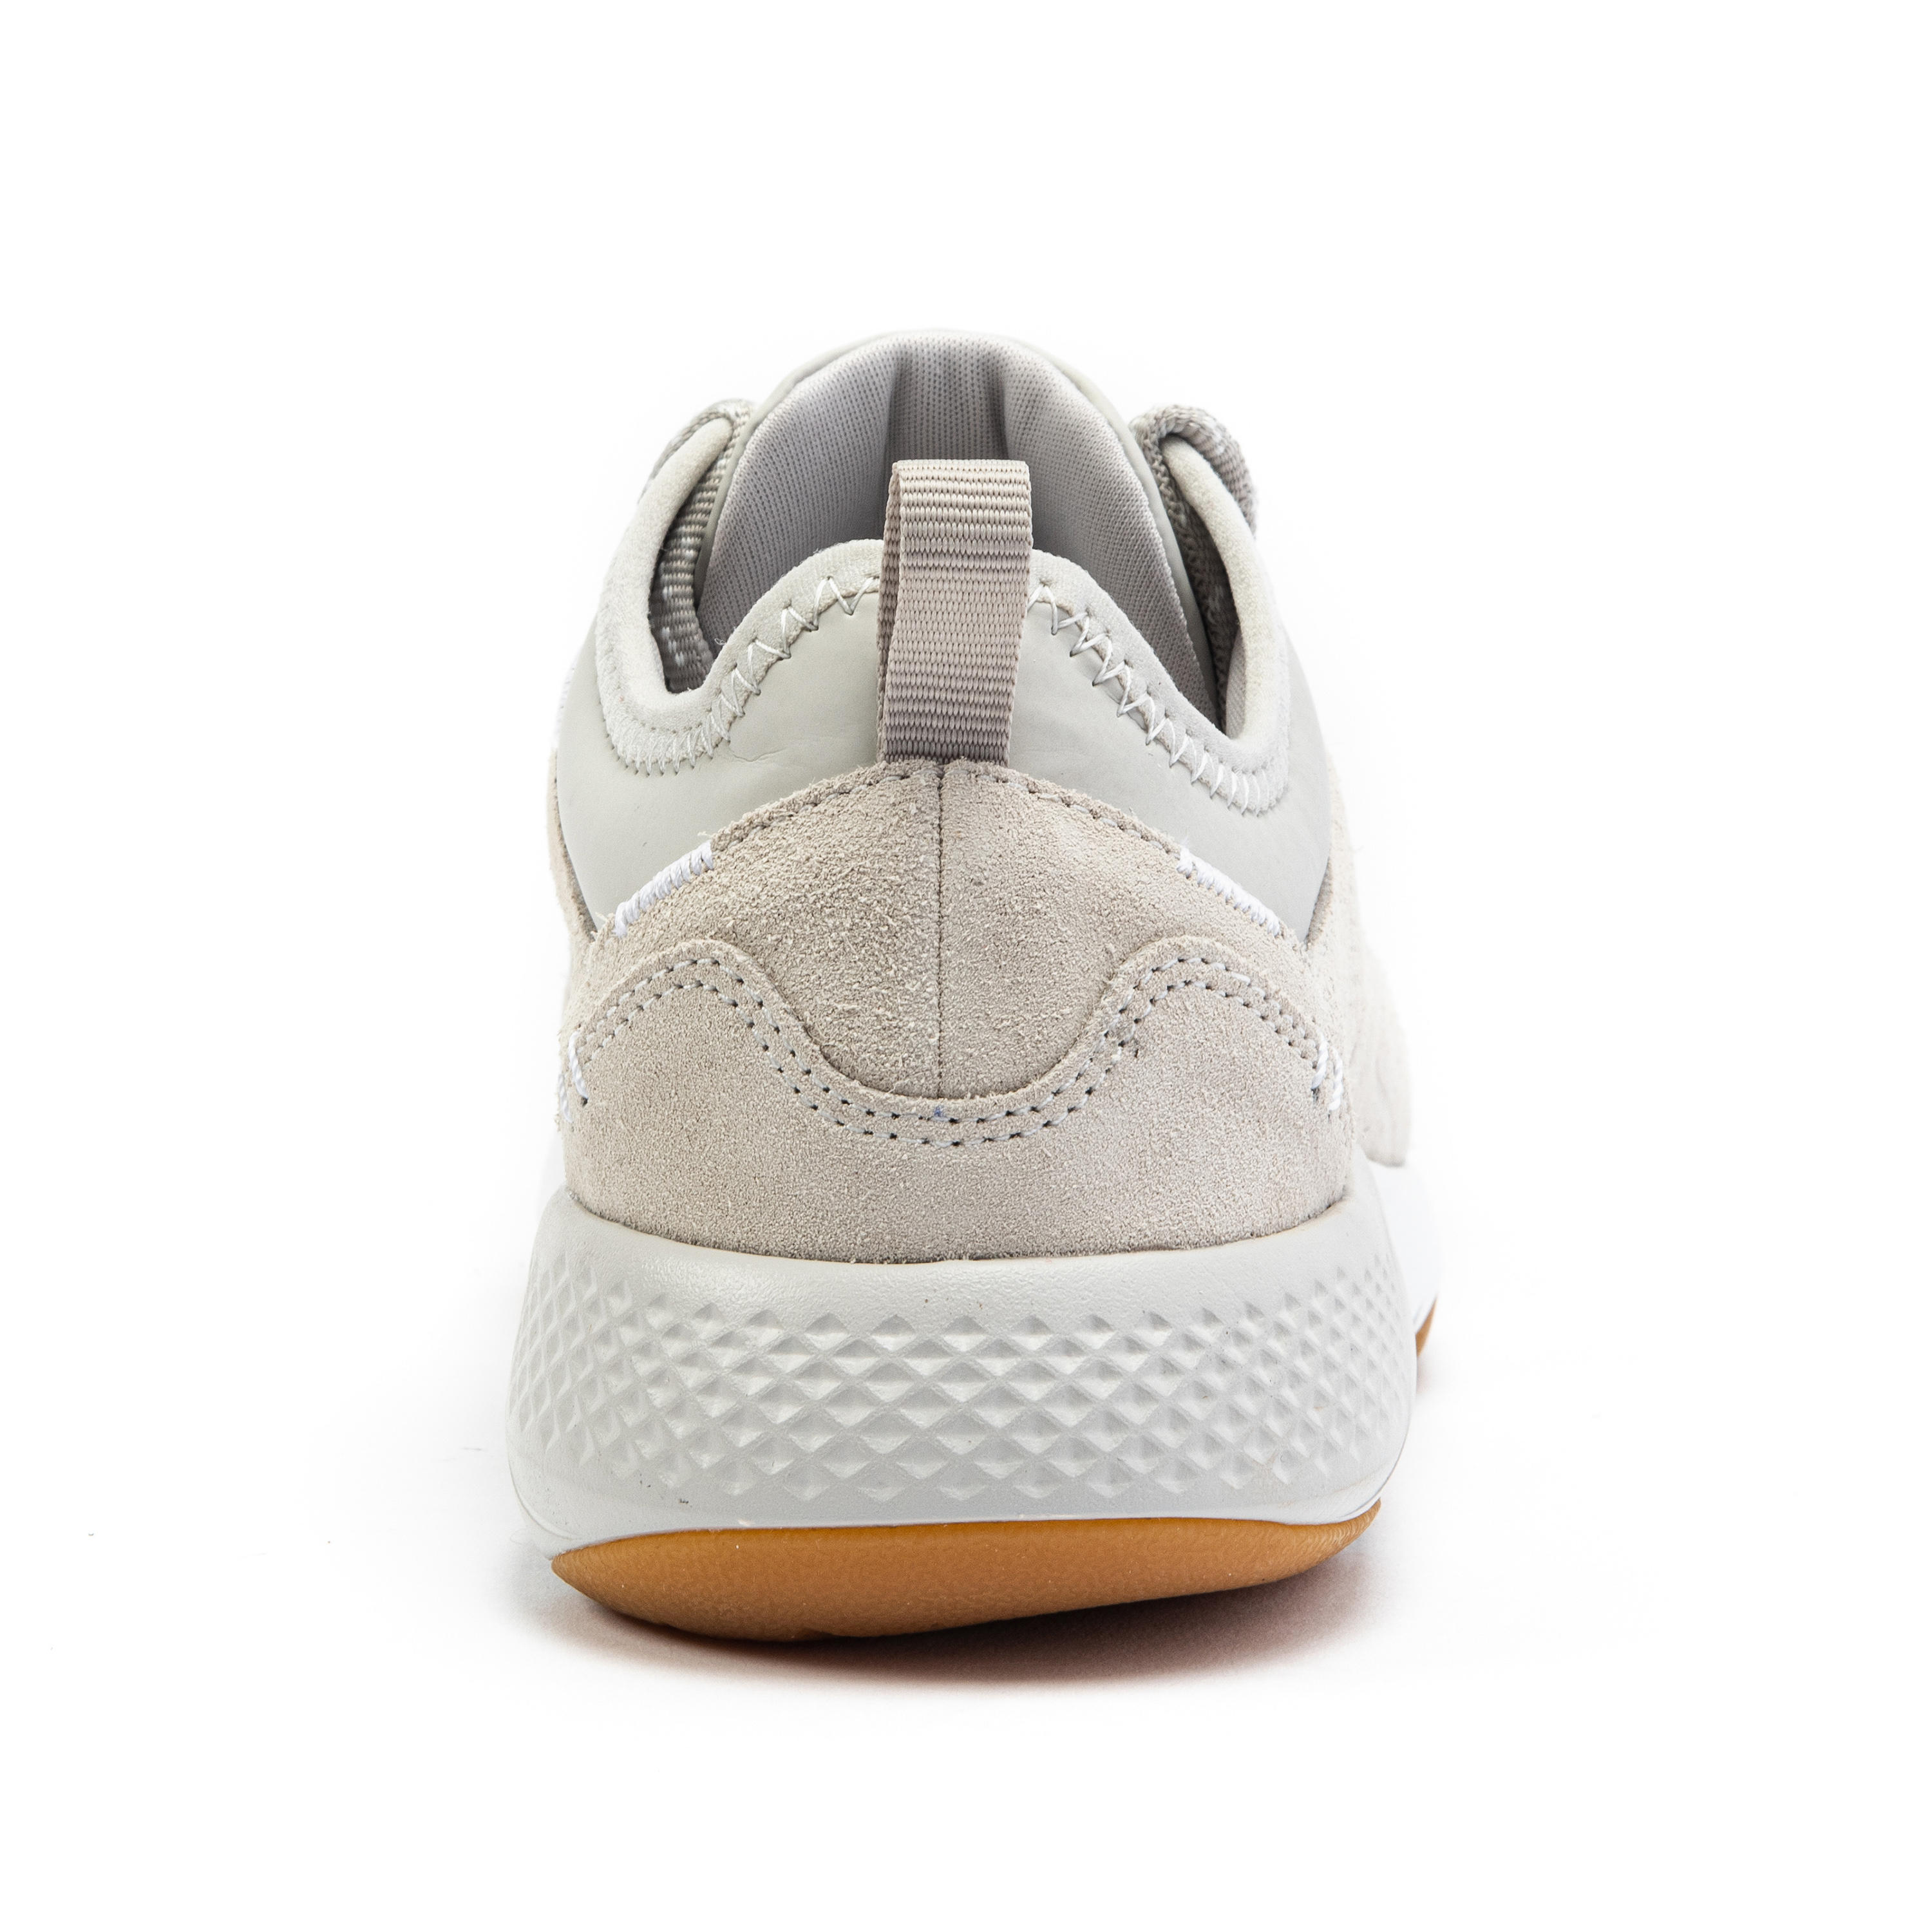 Women's City Walking Shoes Actiwalk Comfort Leather - beige 17/32